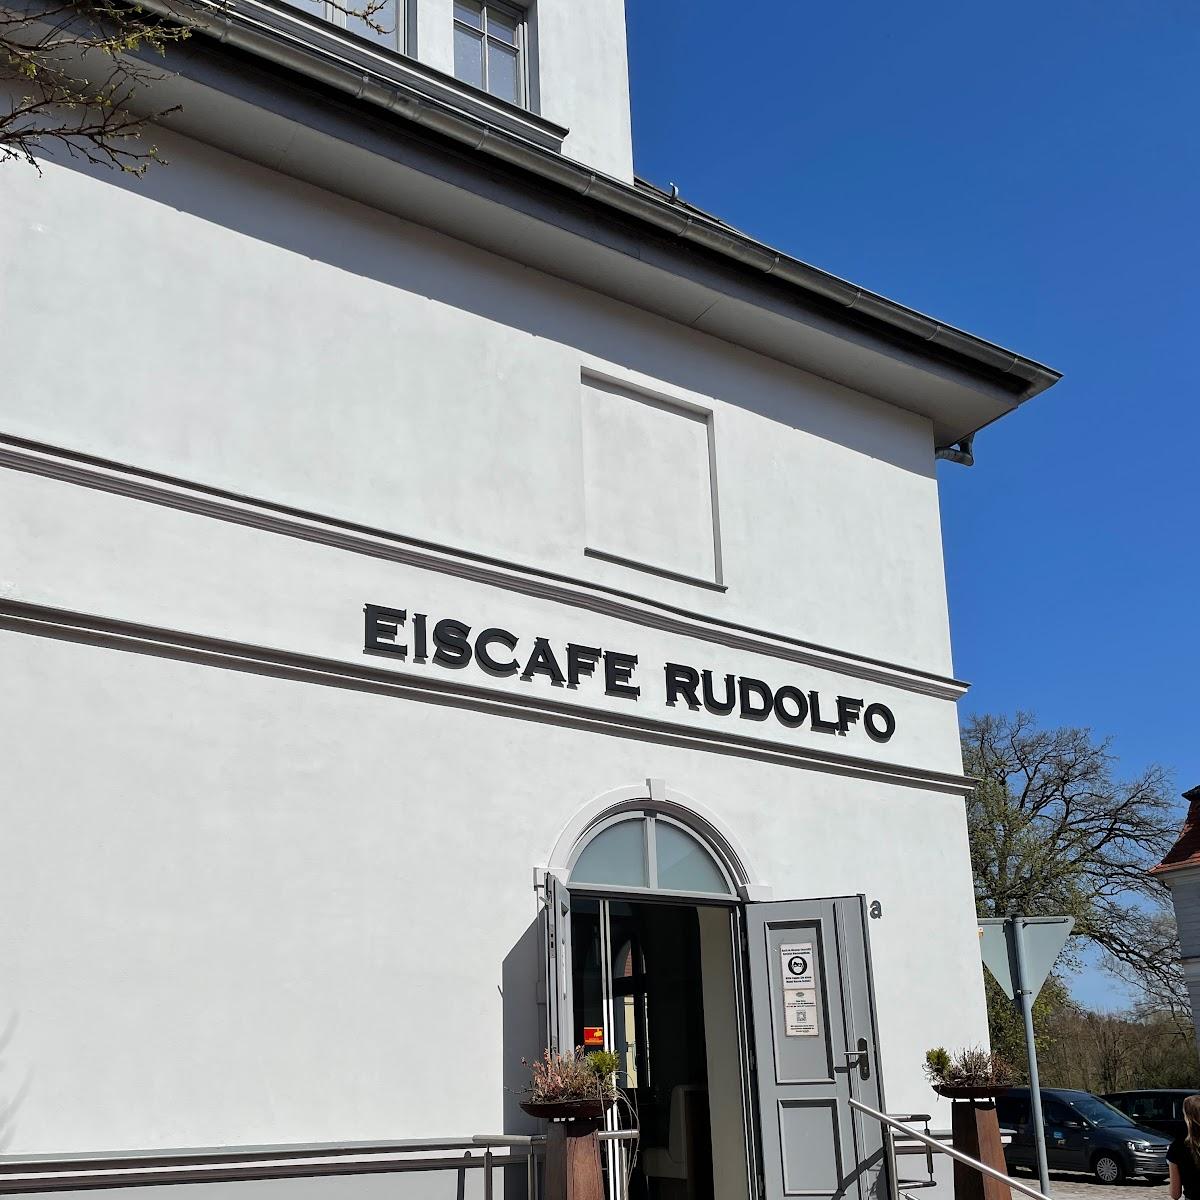 Restaurant "Eiscafé Rudolfo" in Neustadt-Glewe